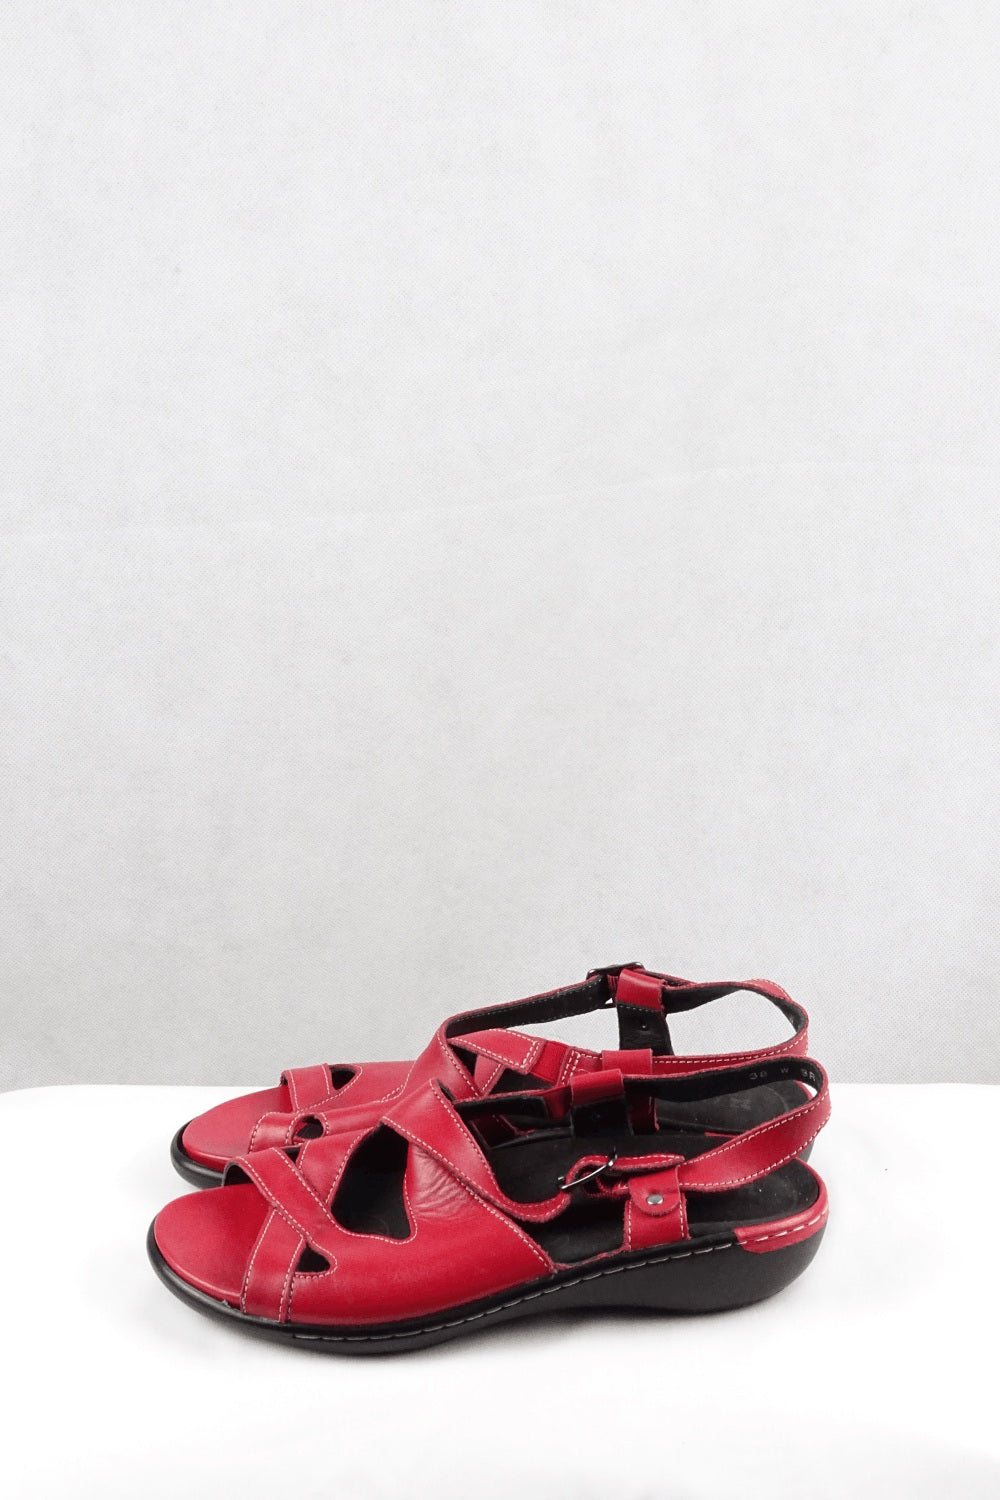 Ziera Red Sandals 38